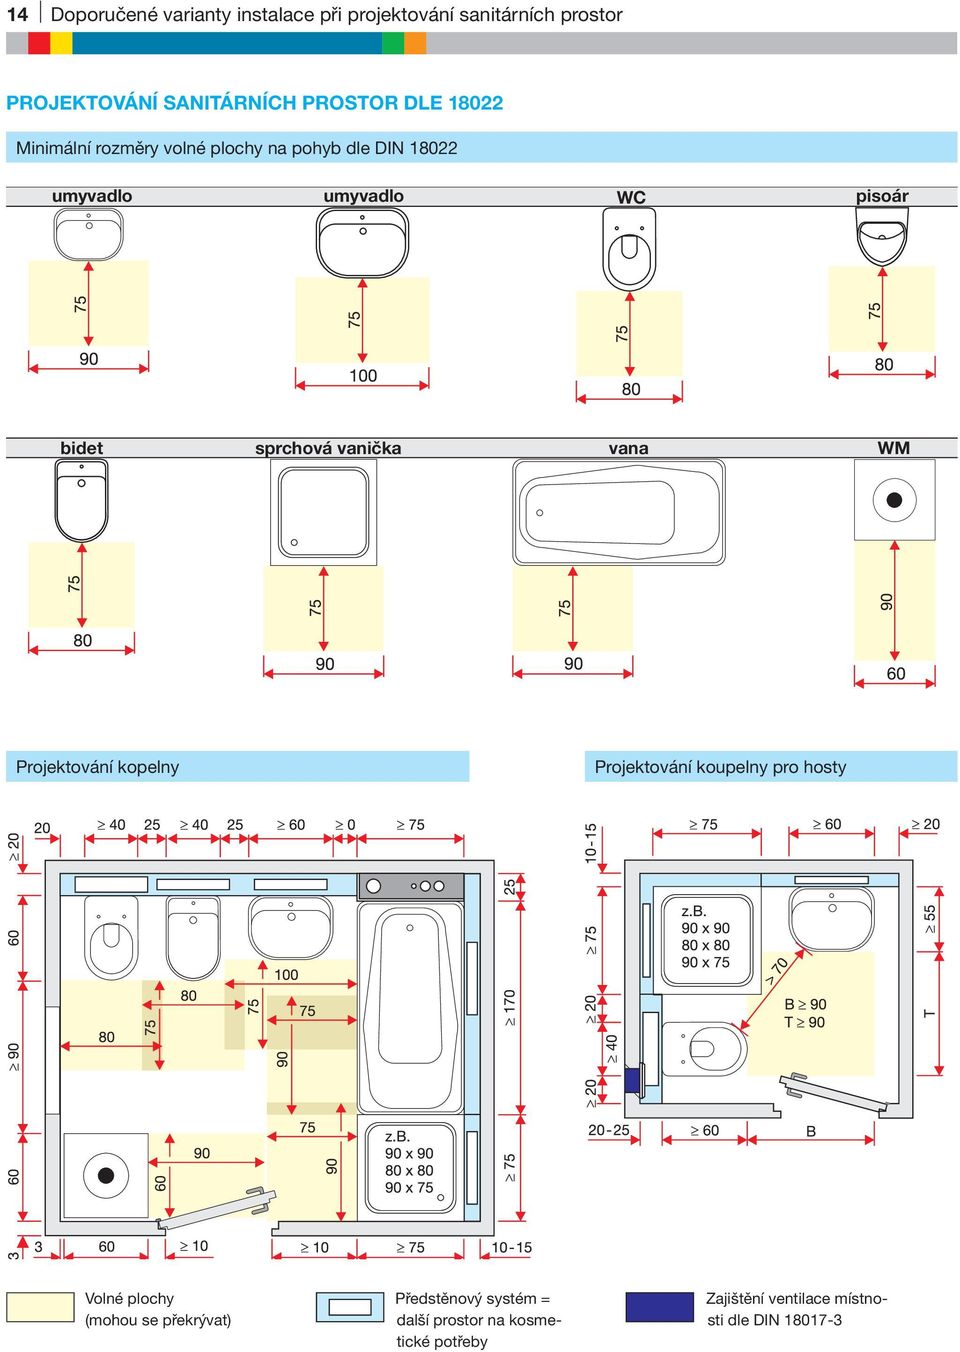 sprchová vanička vana WM Projektování kopelny Projektování koupelny pro hosty Volné plochy (mohou se